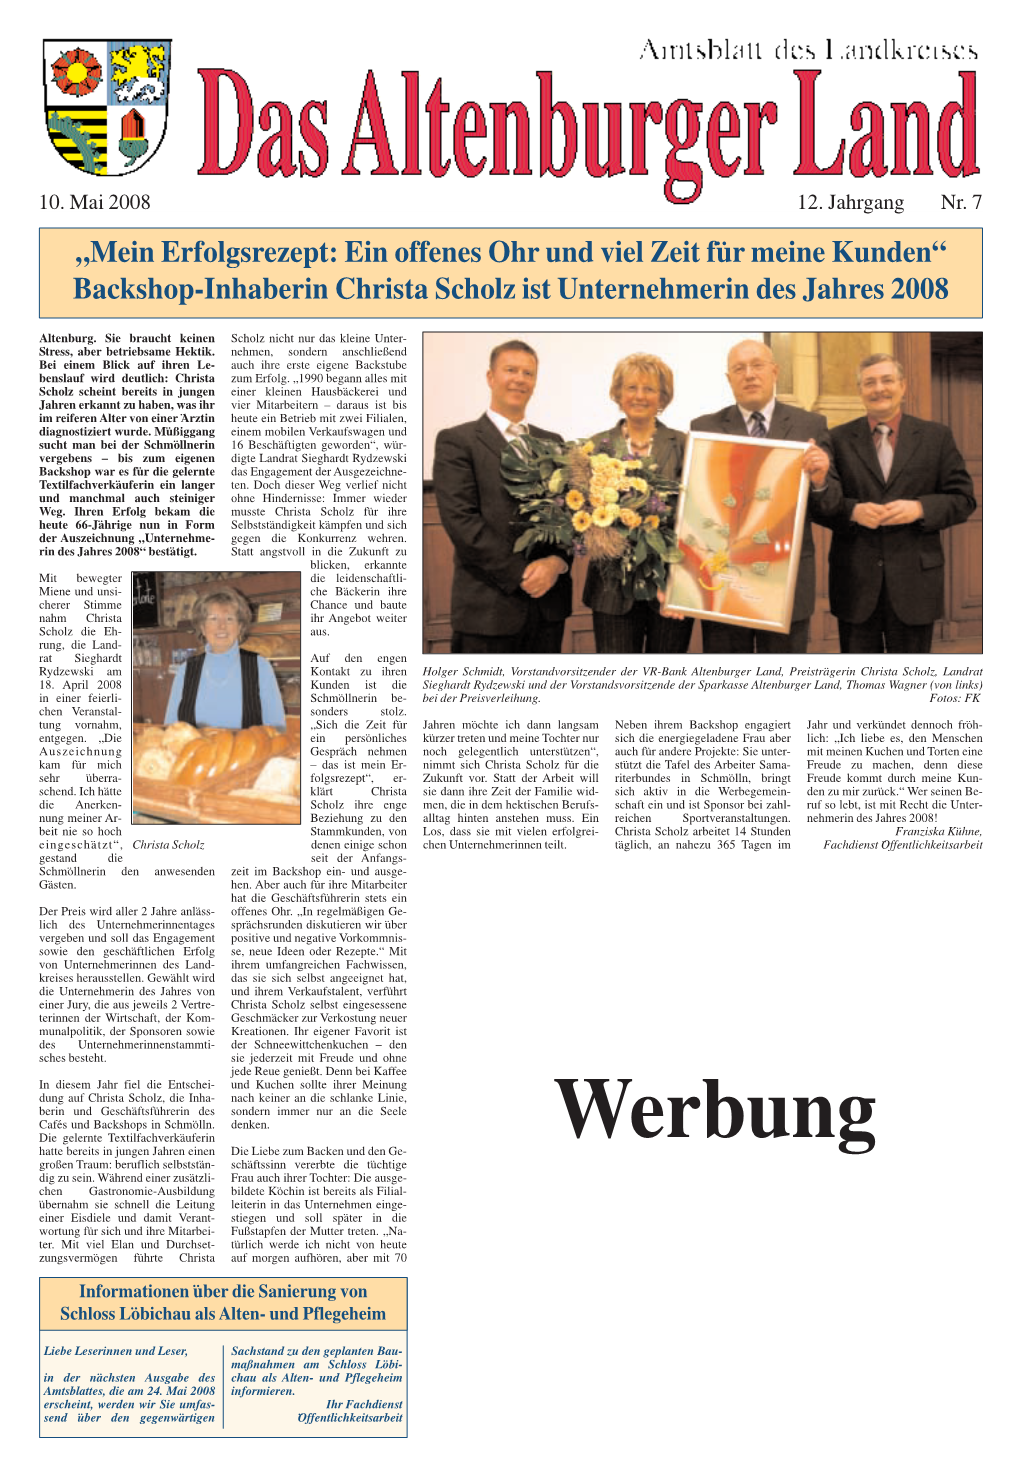 Amtsblatt Nr. 7 Am 10. Mai 2008